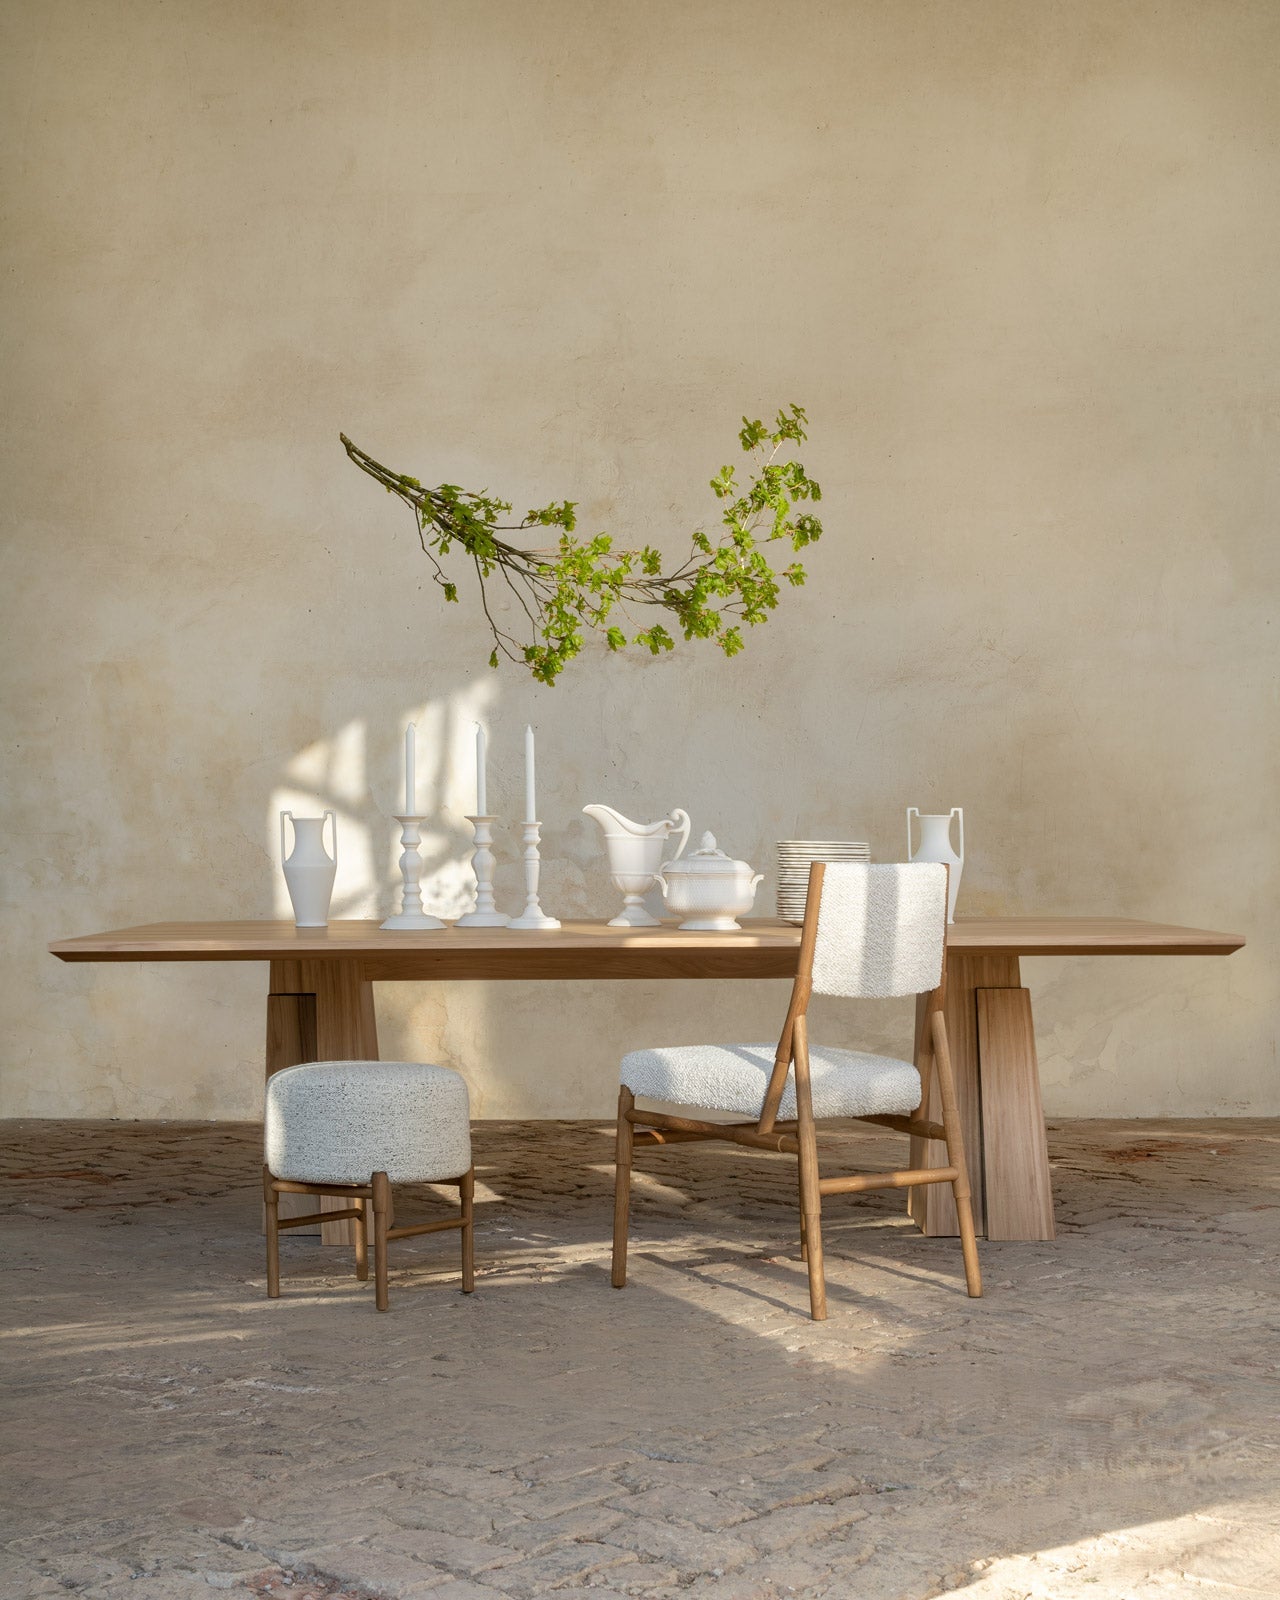 Meuble table Etretat en orme brossé, chaise Bilbao chêne et tissu bouclette blanc et tabouret Bilbao chêne et tissu bouclette blanc